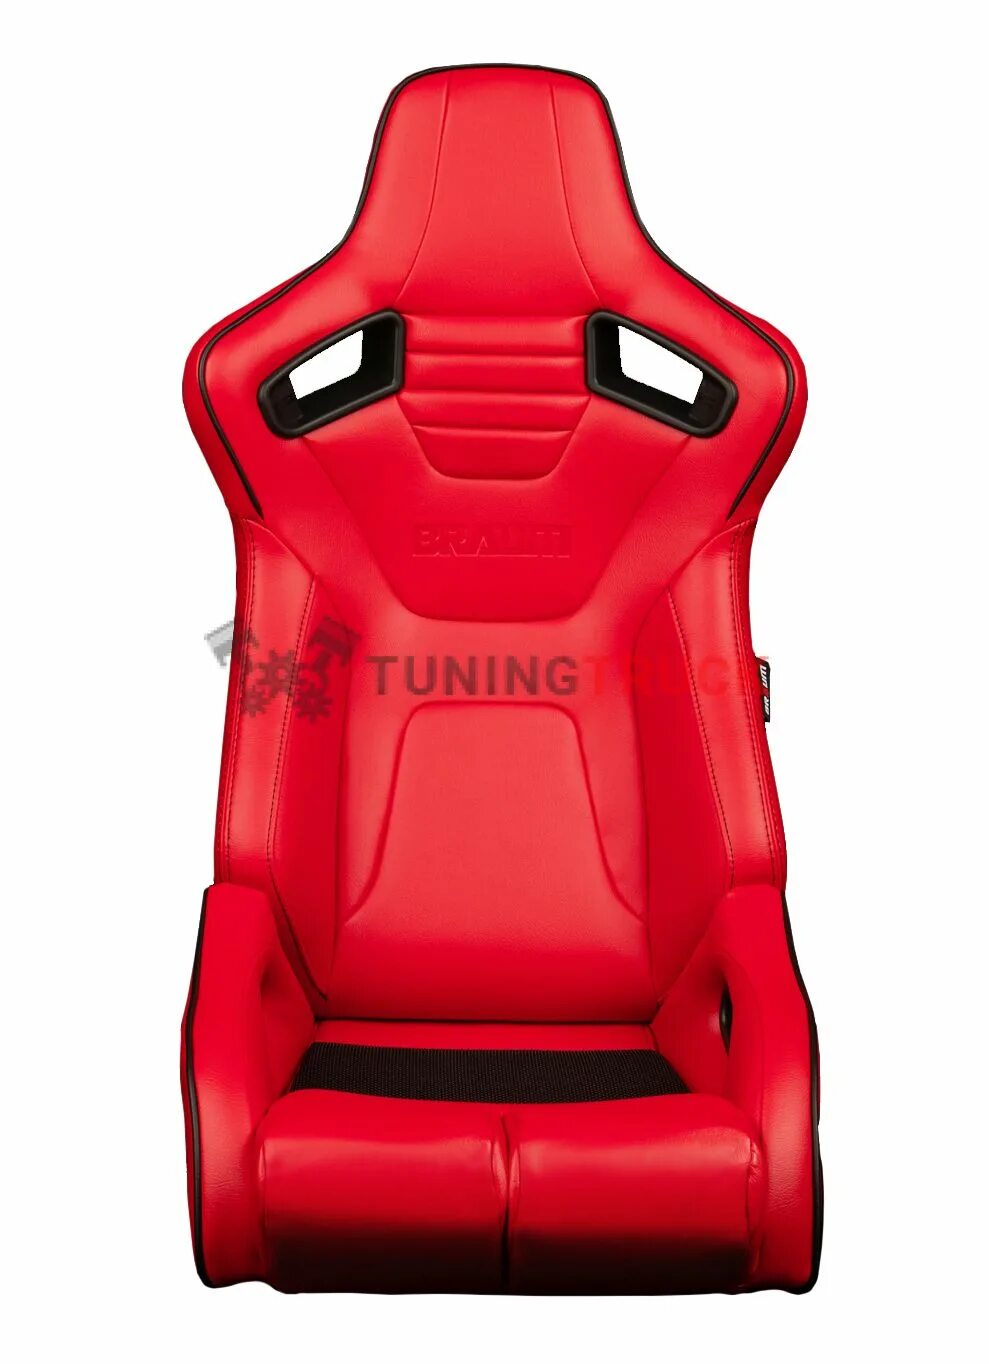 VSD-1r Racing Seat. Racer 11578 красный кресло. Спортивное кресло. Анатомические сиденья. Купить спортивные сидения